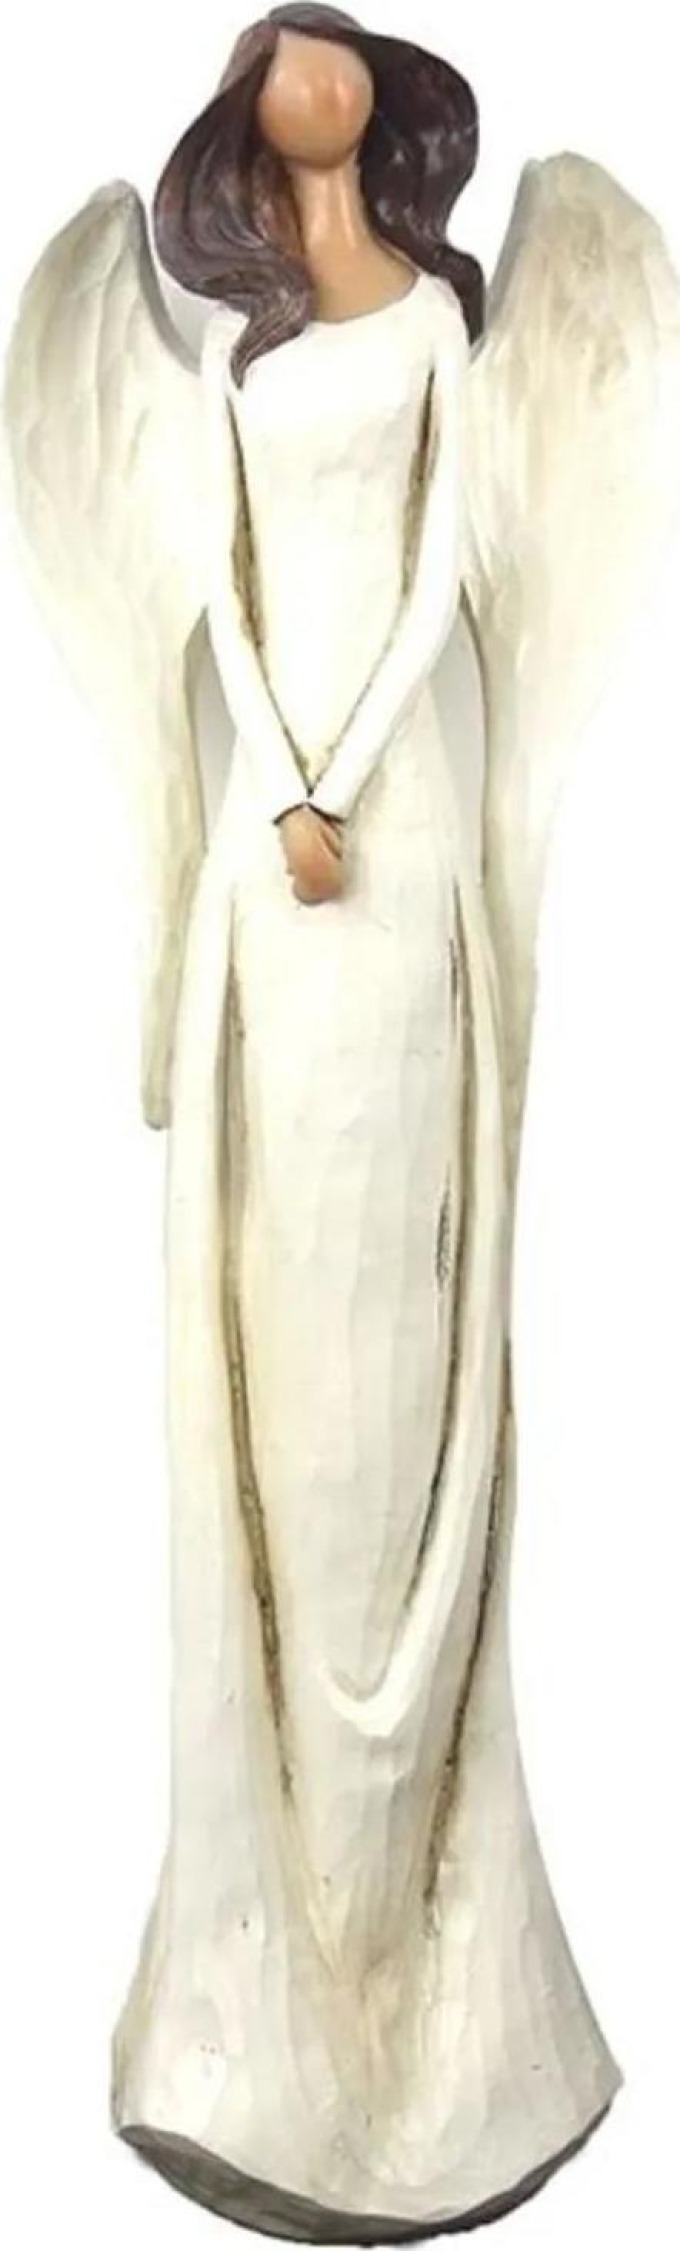 Bílý anděl s patinou ve velikosti 40 cm